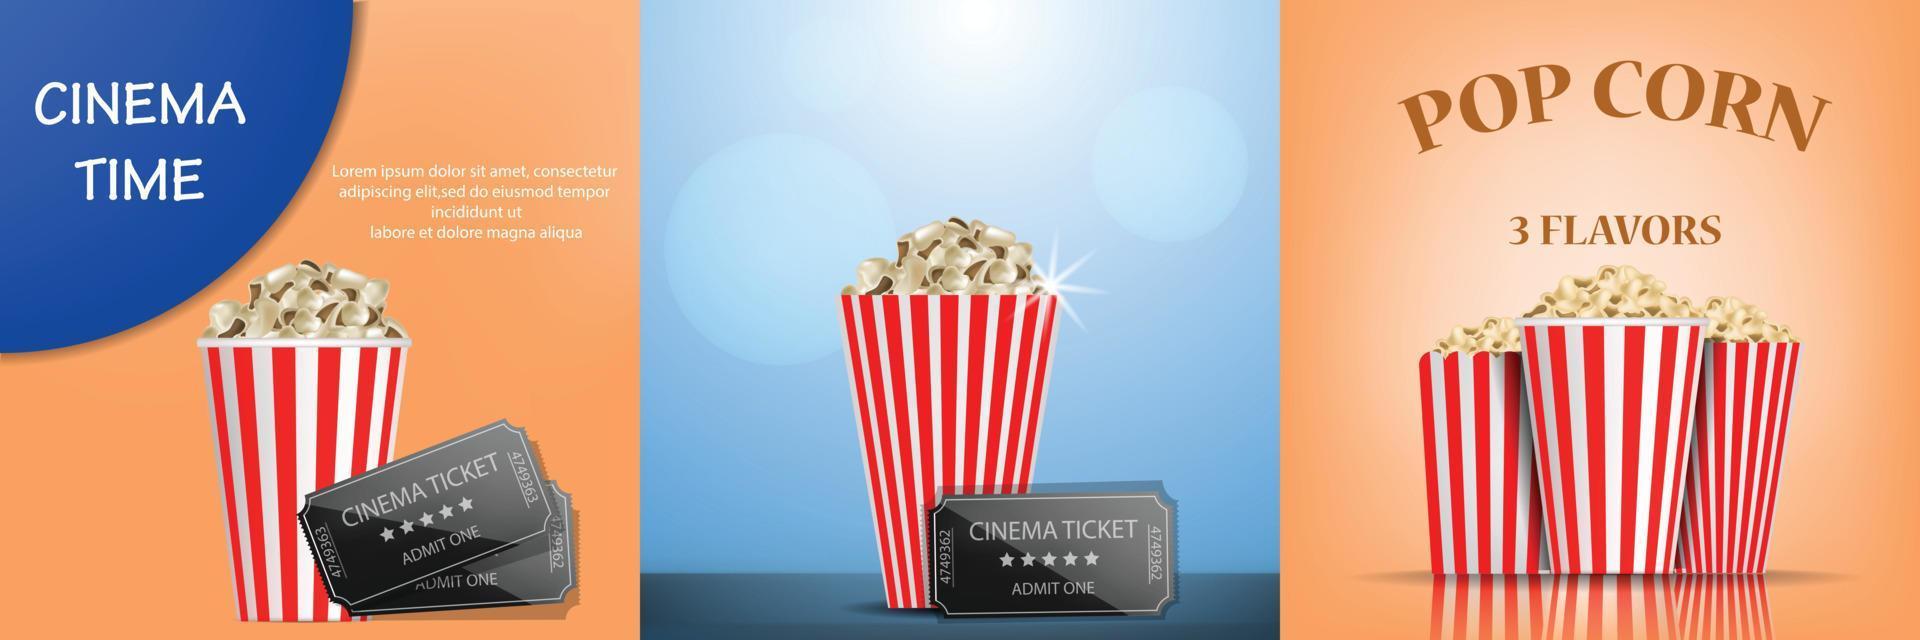 popcorn bioscoop box banner set, realistische stijl vector